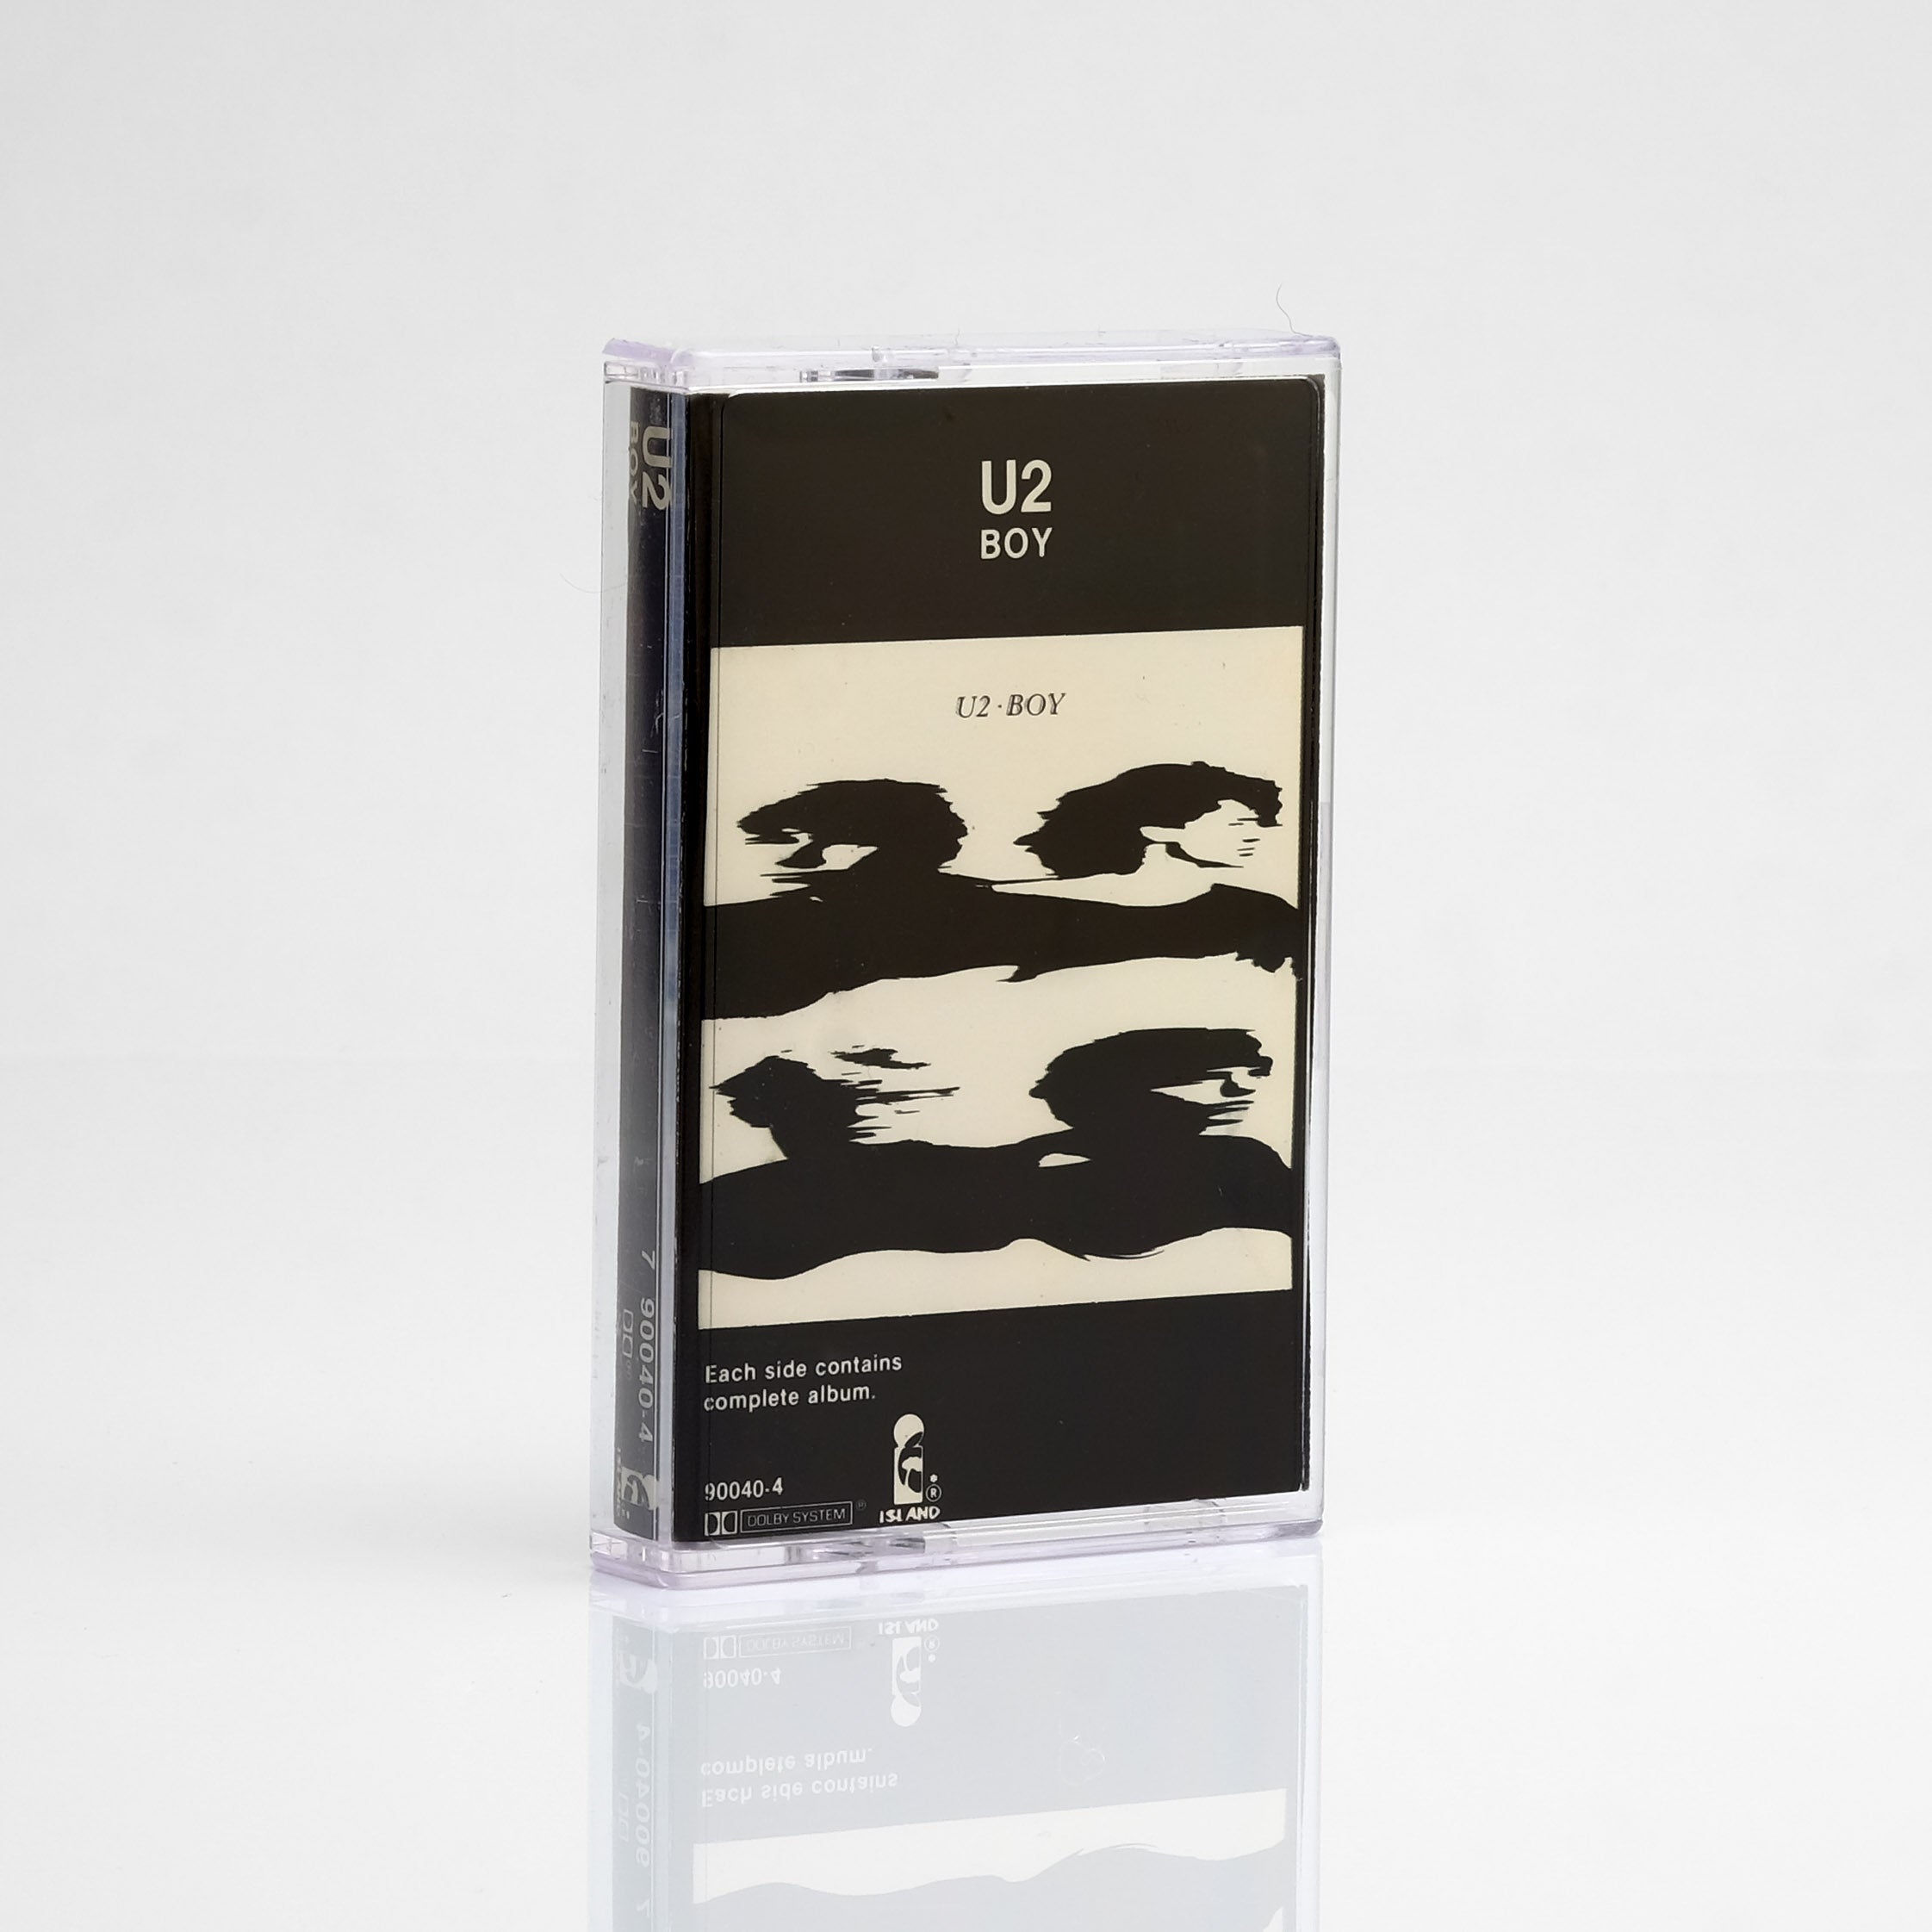 U2 - Boy Cassette Tape